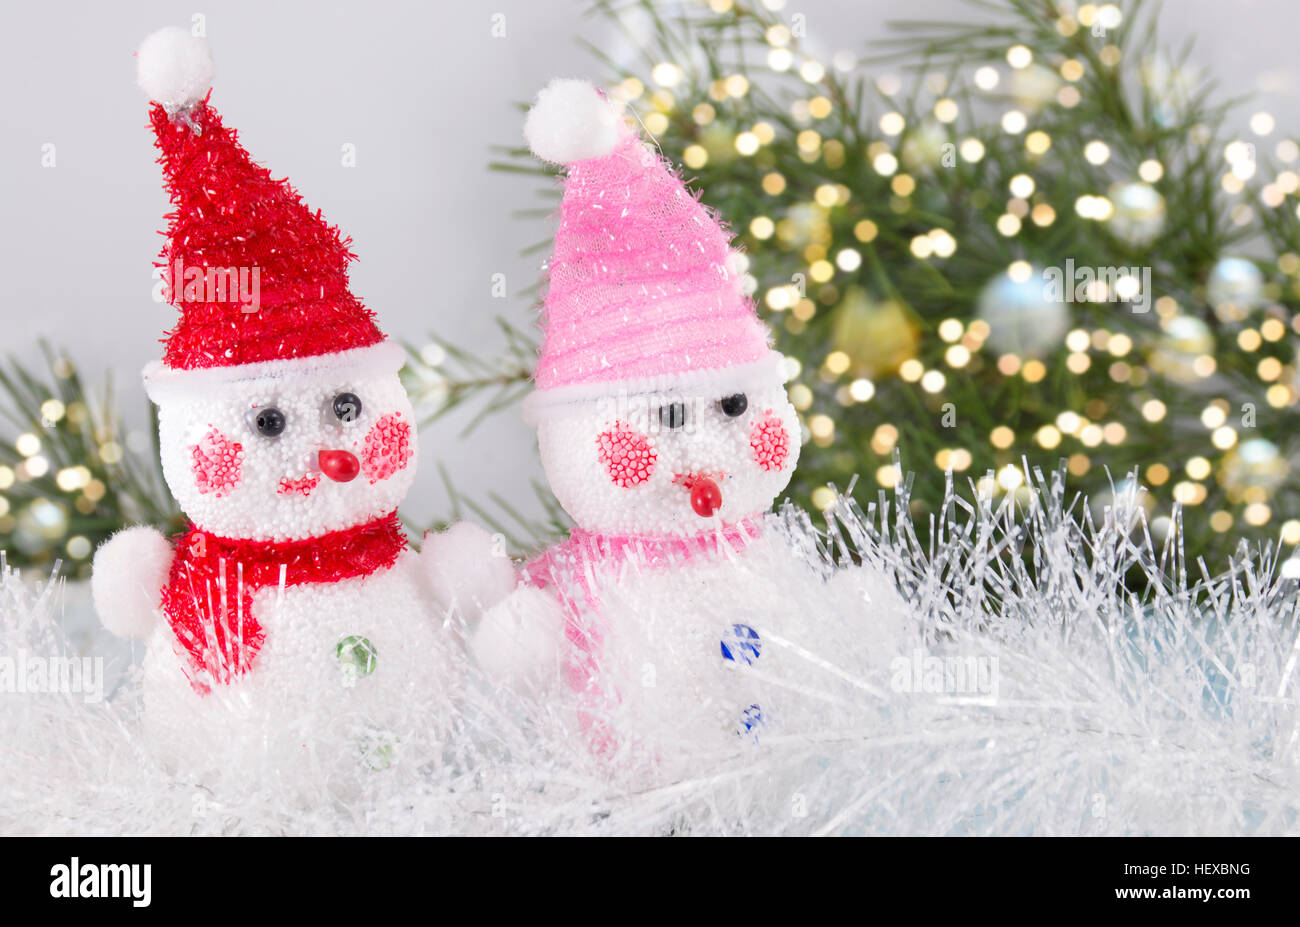 Dos toy snowman con antecedentes navideños Foto de stock